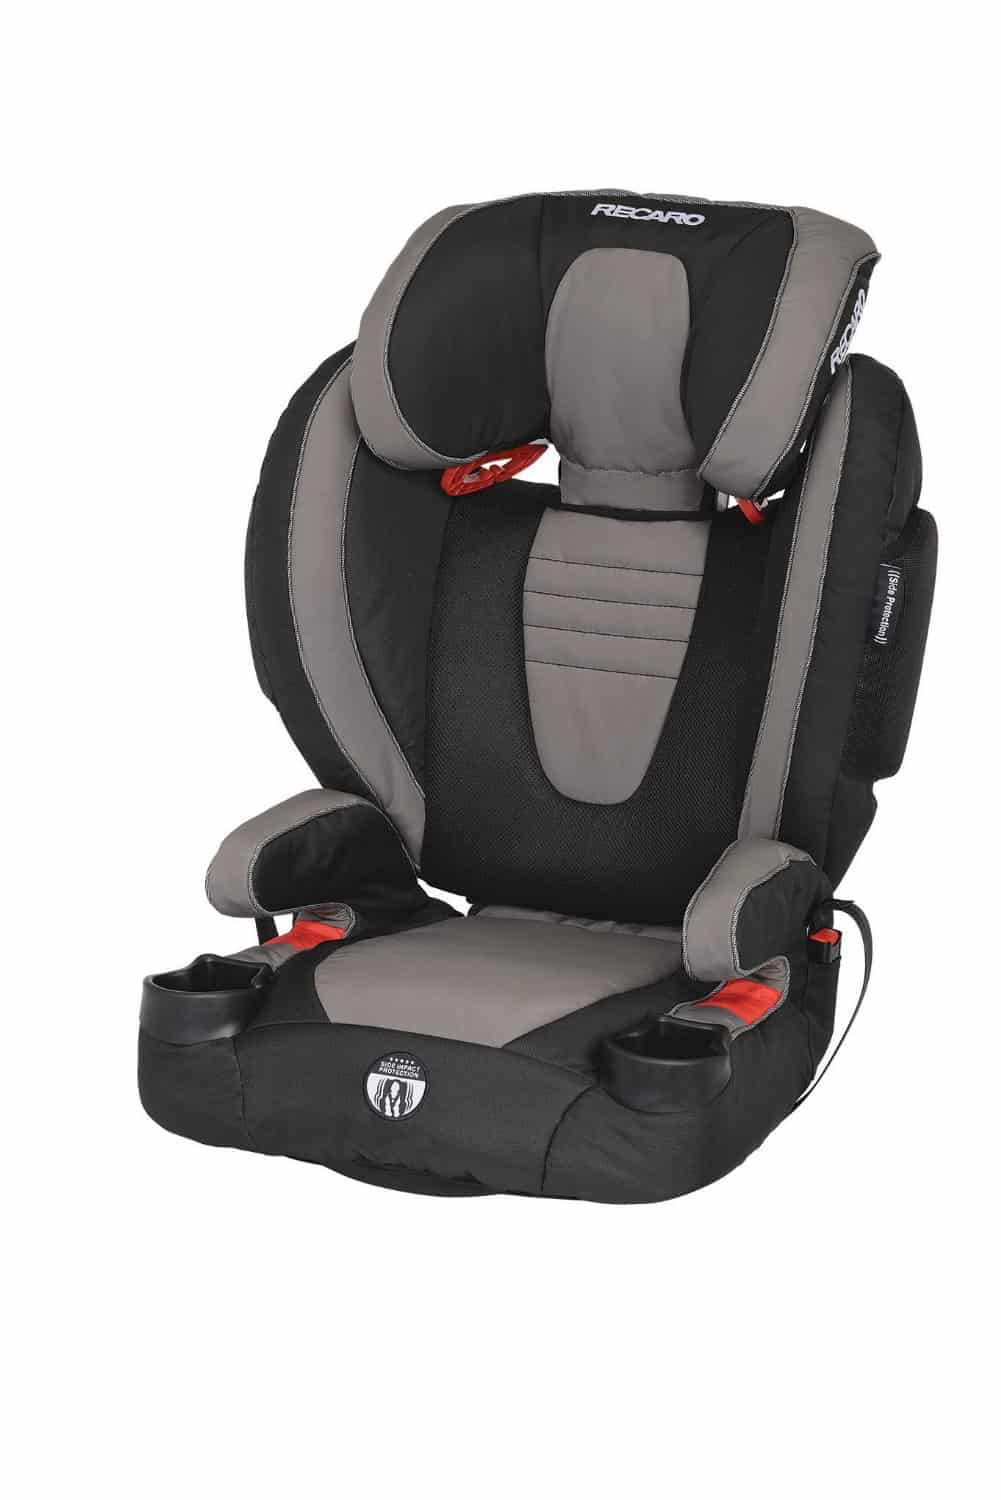 recaro baby seat target